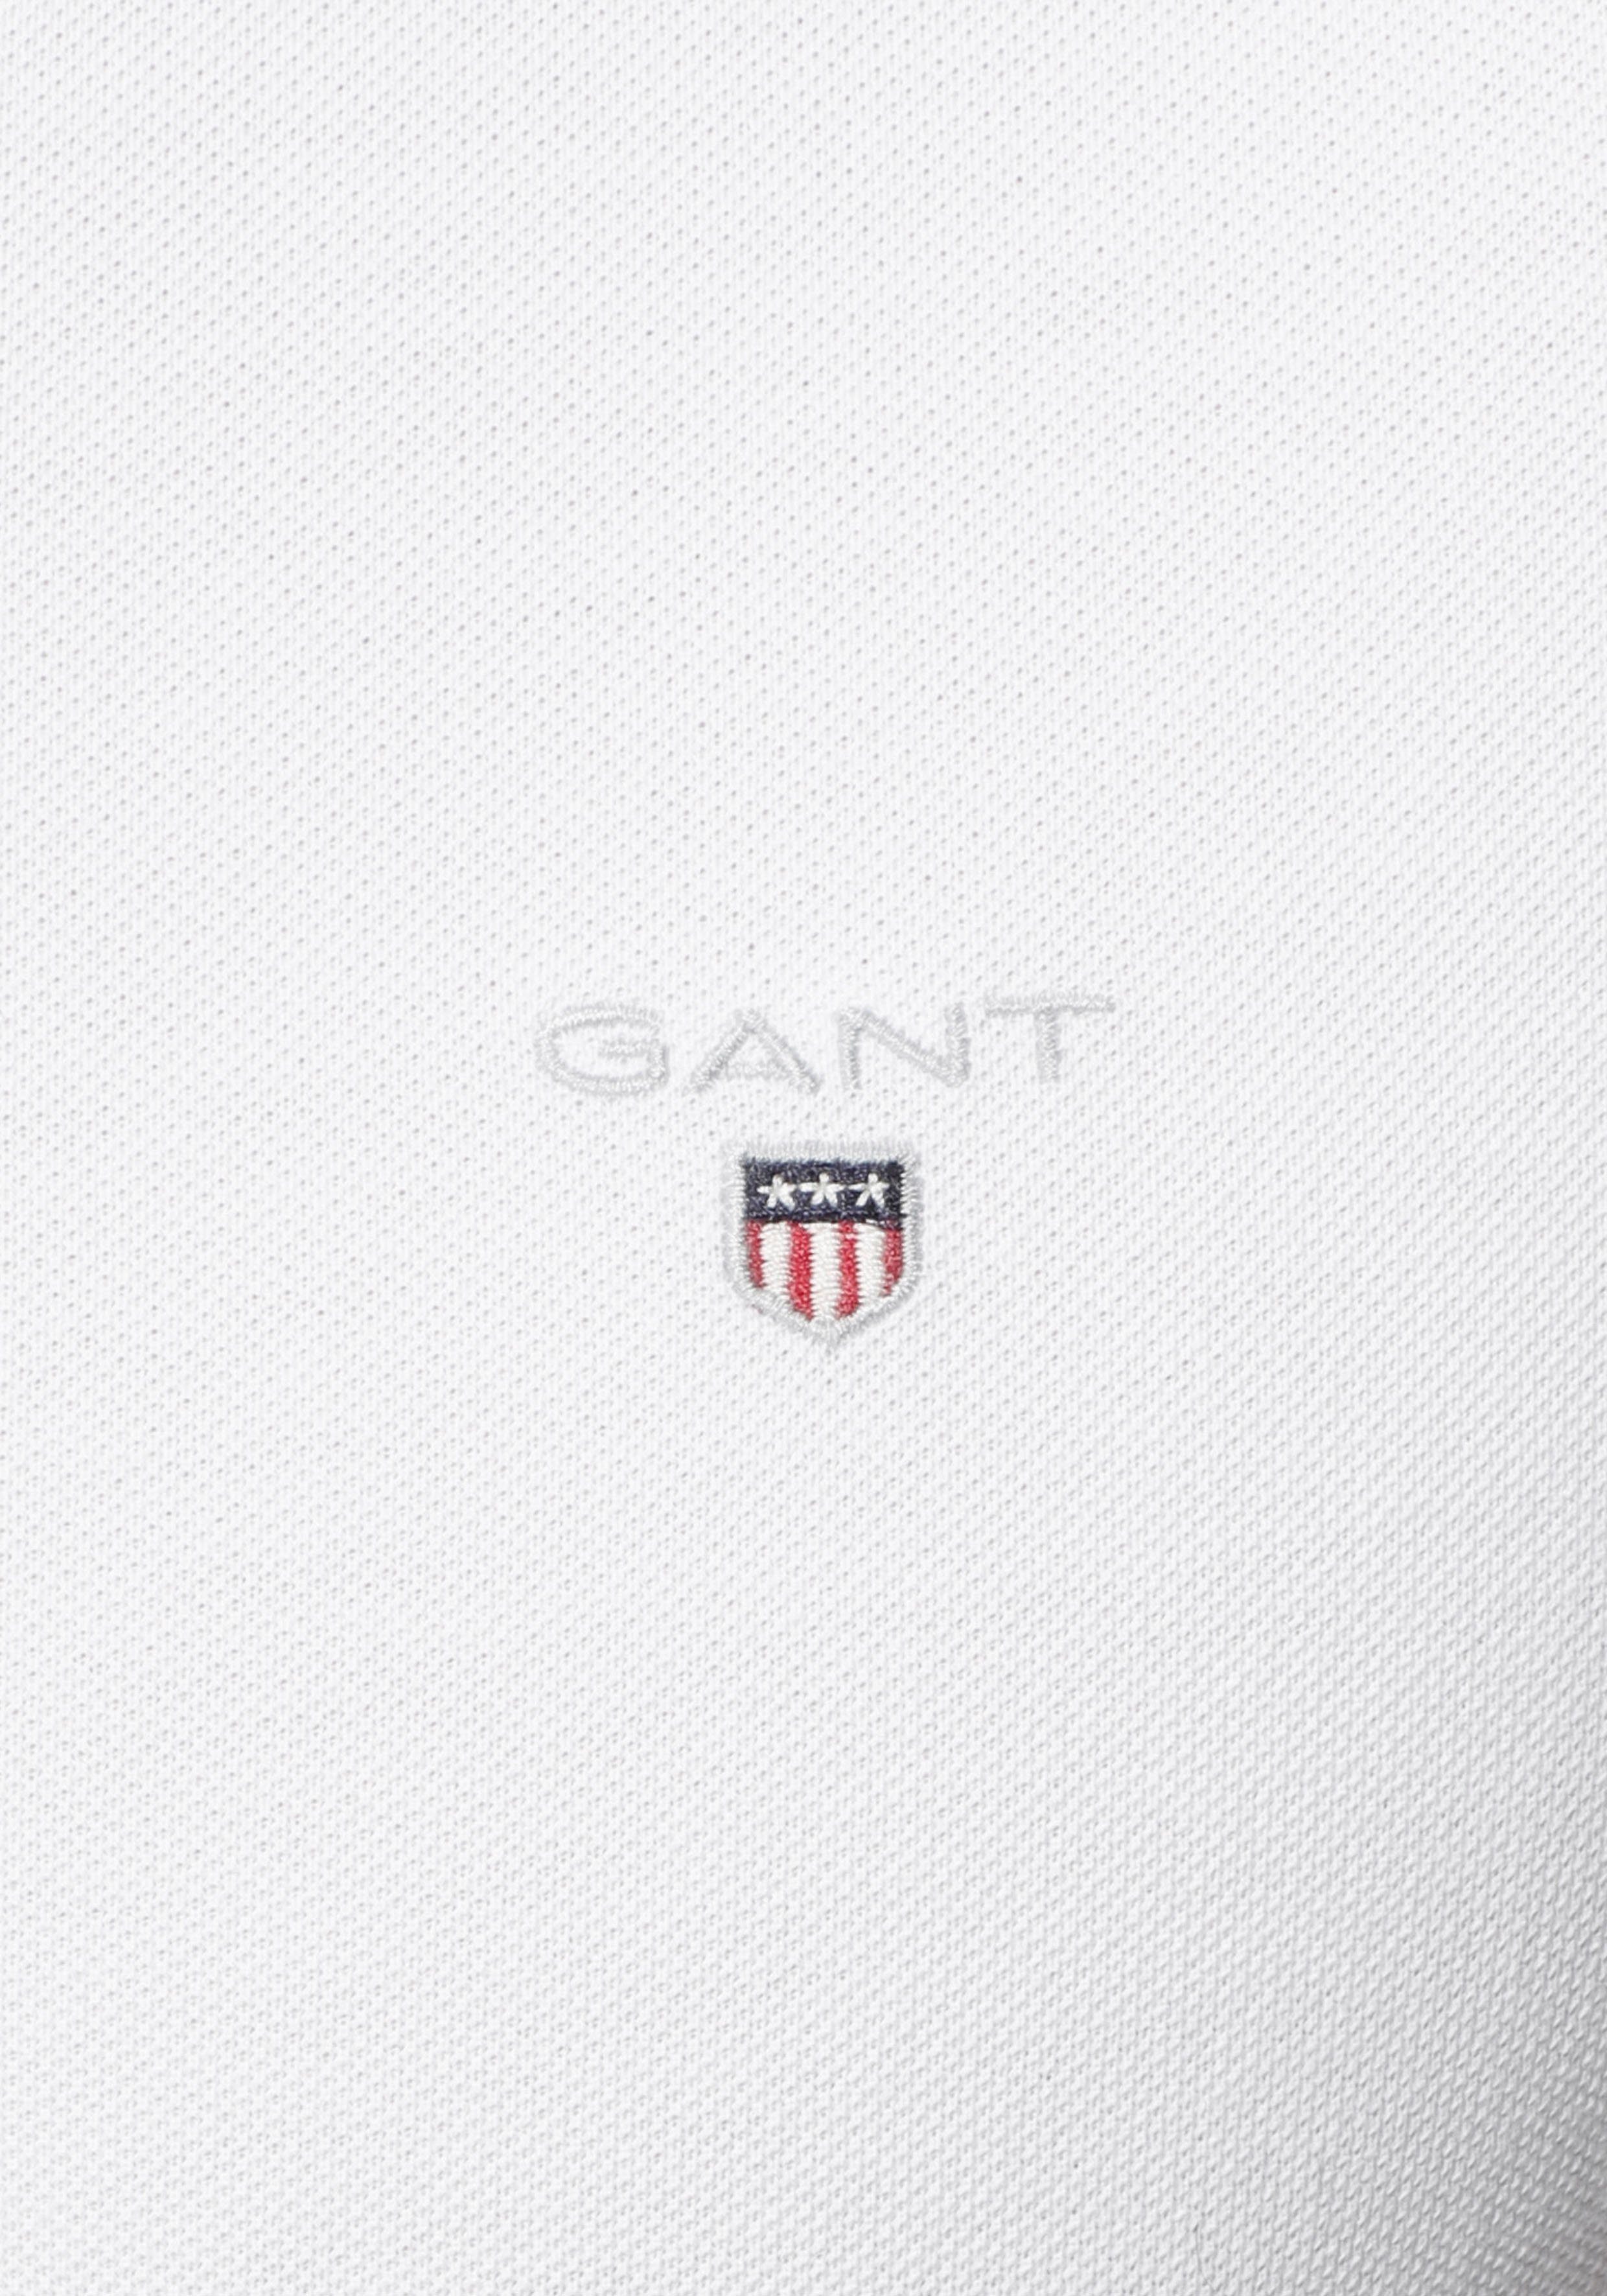 SLIM am Ausschnitt Poloshirt SHORT Knopfleiste Gant ORIGINAL RUGGER white PIQUE mit